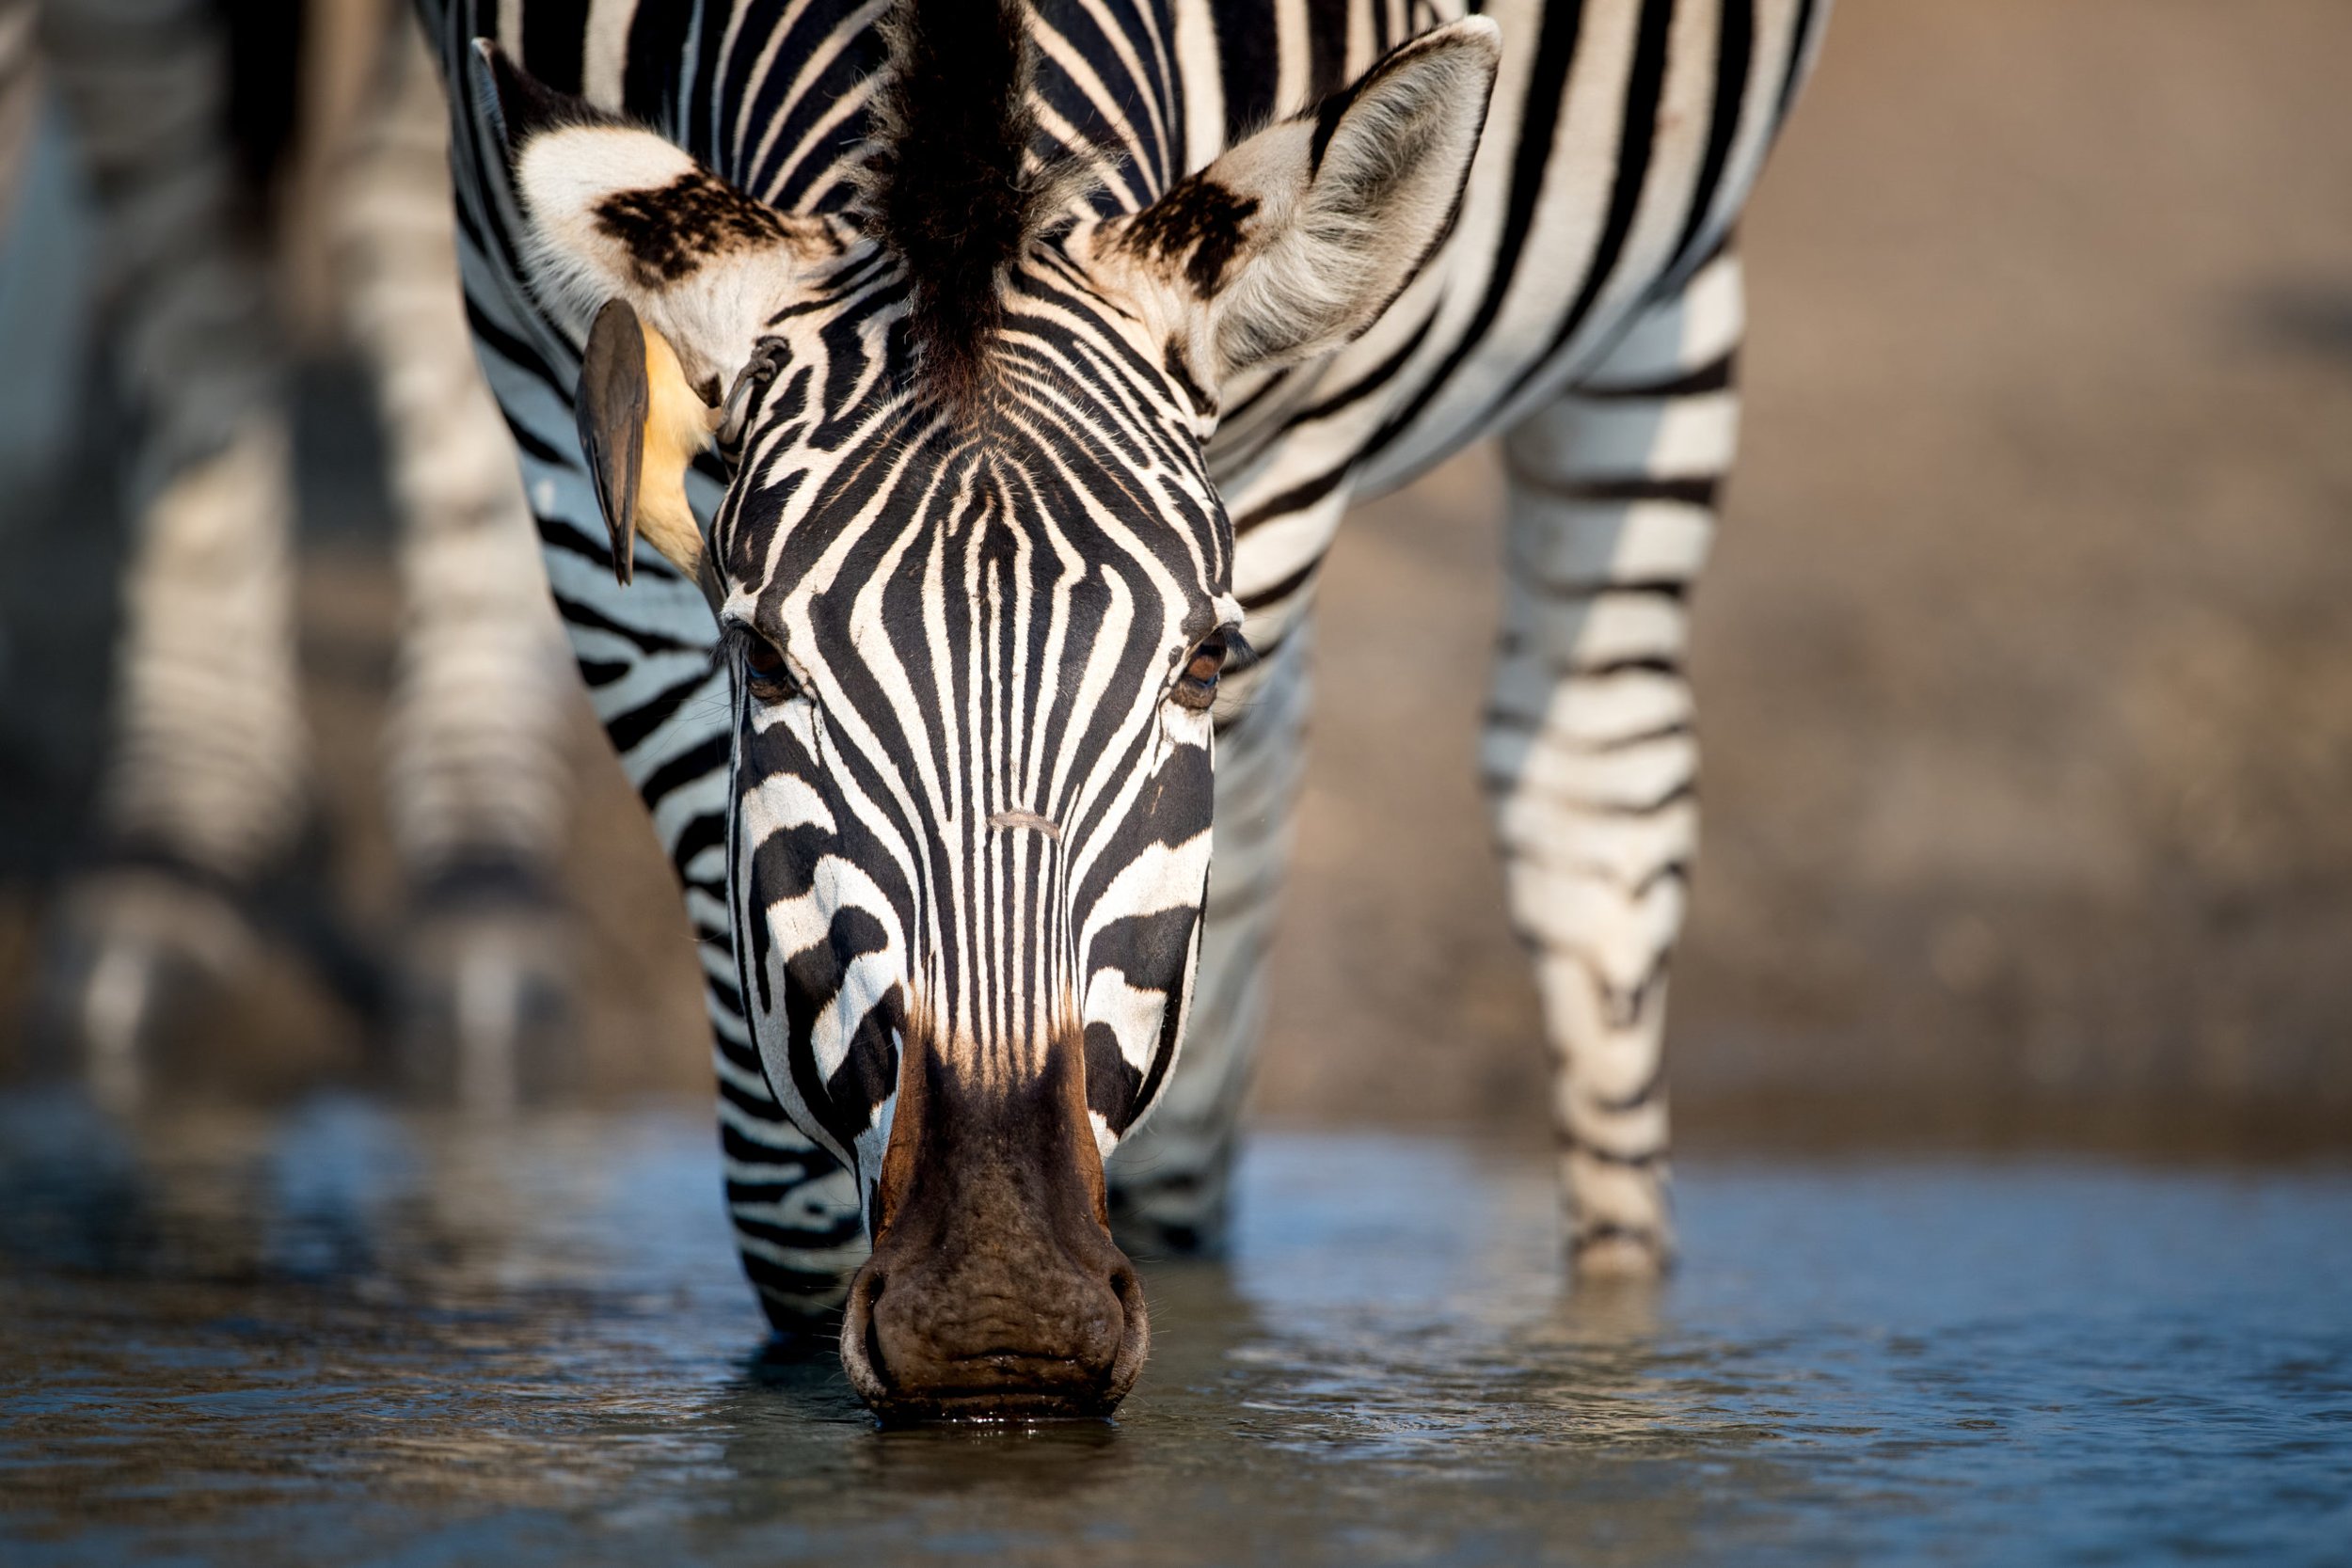 Wildlife-_-Zebra-_-Singita-Pamushana-_-Ross-Couper-14-scaled-1.jpg